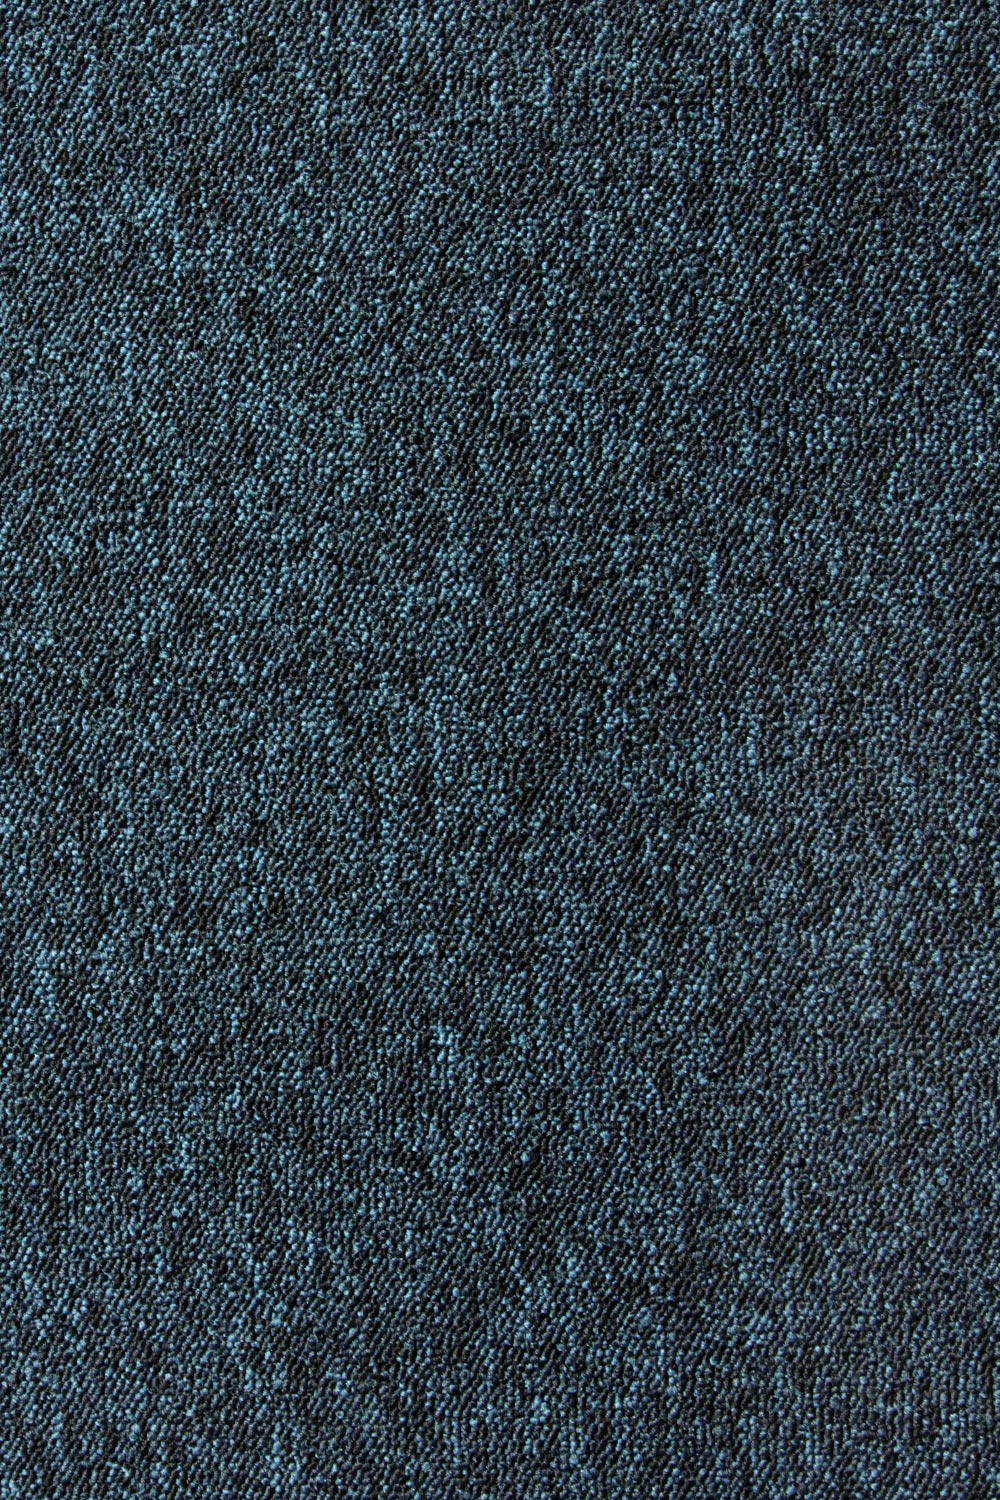 Metrážny koberec Lyon Solid 83 400 cm